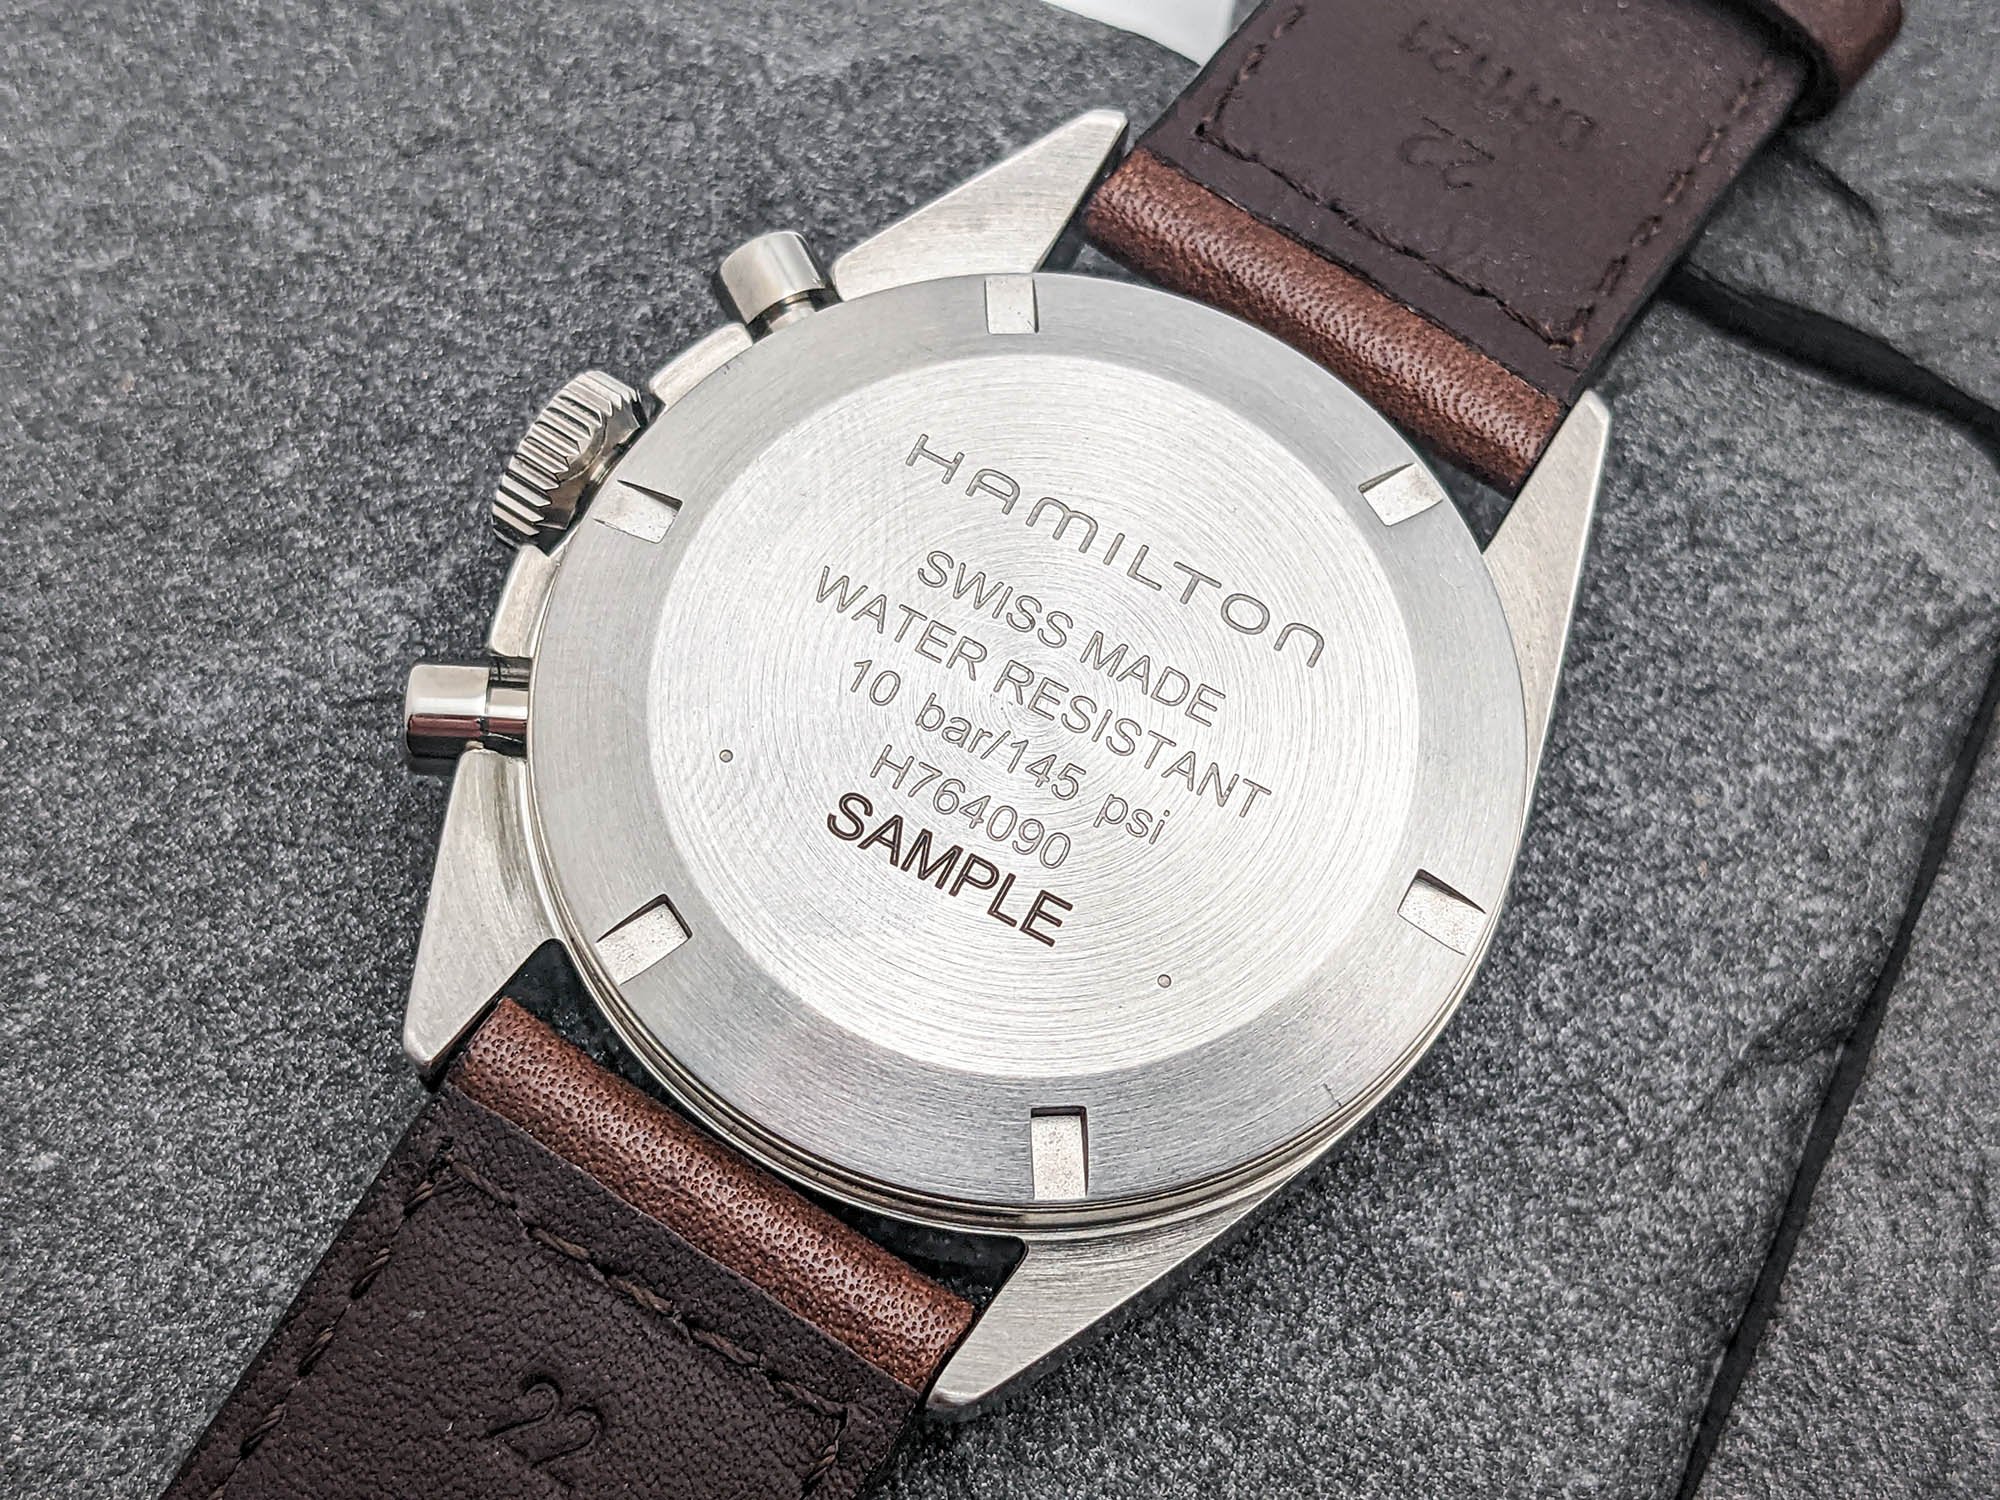 Обзор часов: механический хронограф Hamilton Khaki Pilot Pioneer